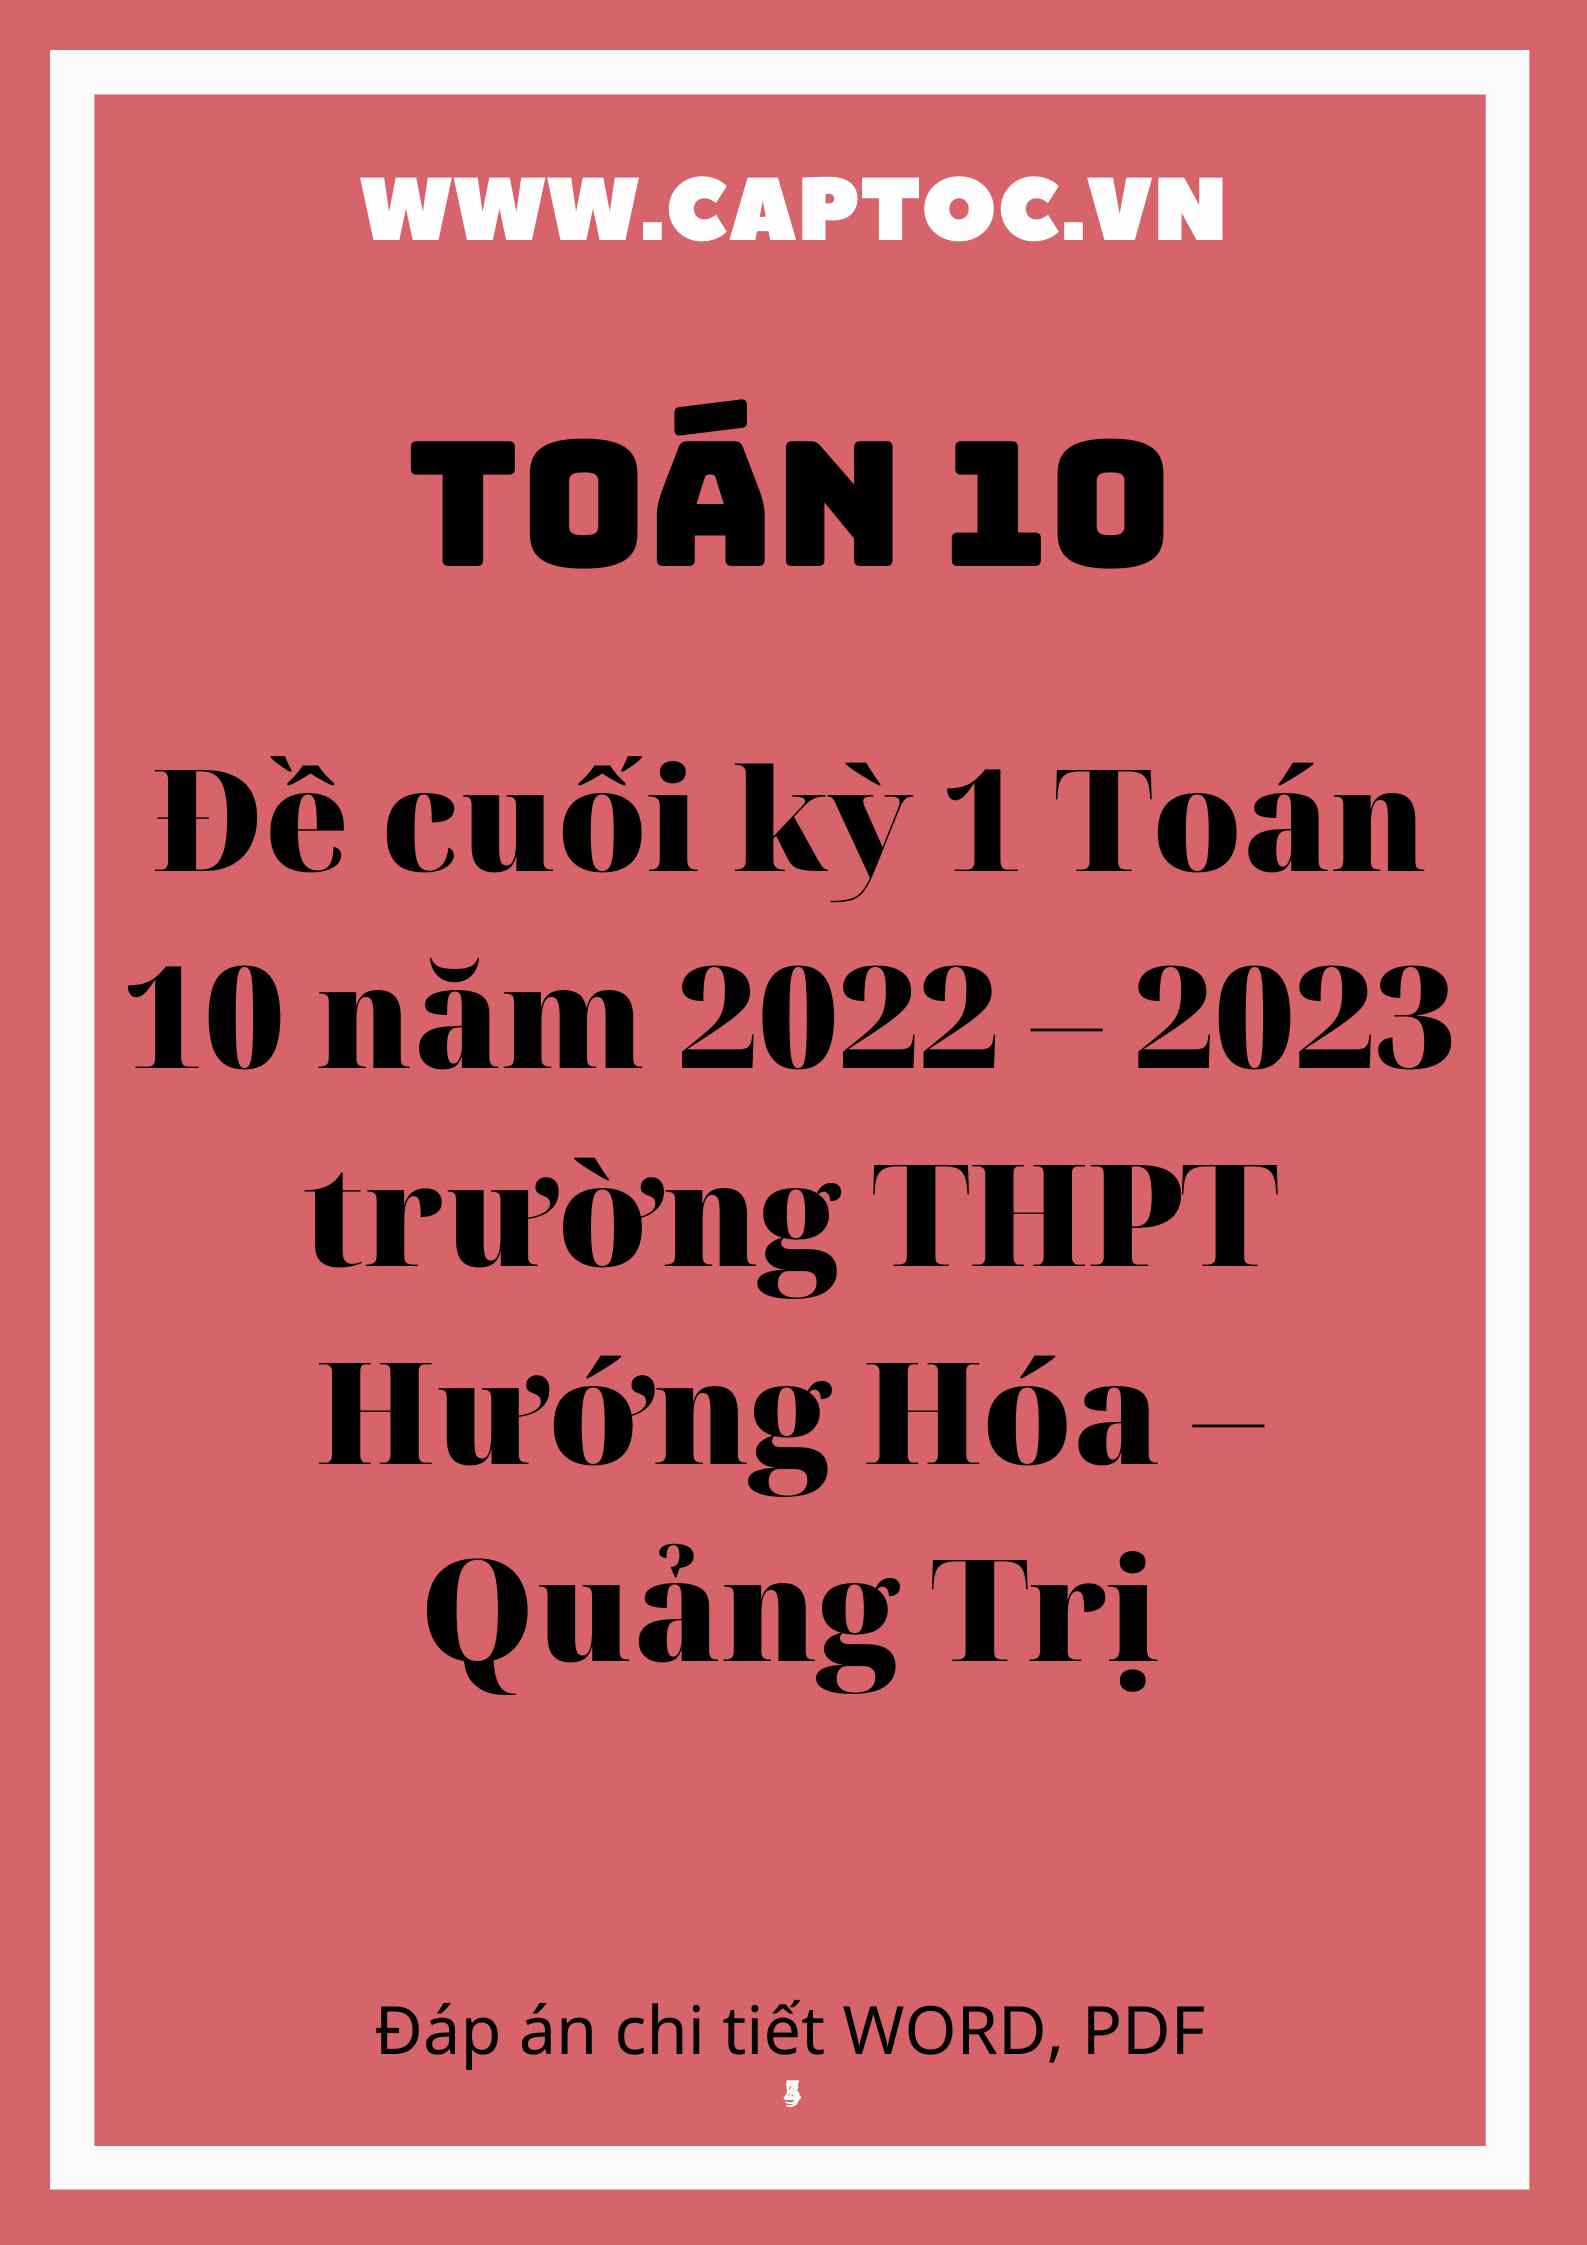 Đề cuối kỳ 1 Toán 10 năm 2022 – 2023 trường THPT Hướng Hóa – Quảng Trị